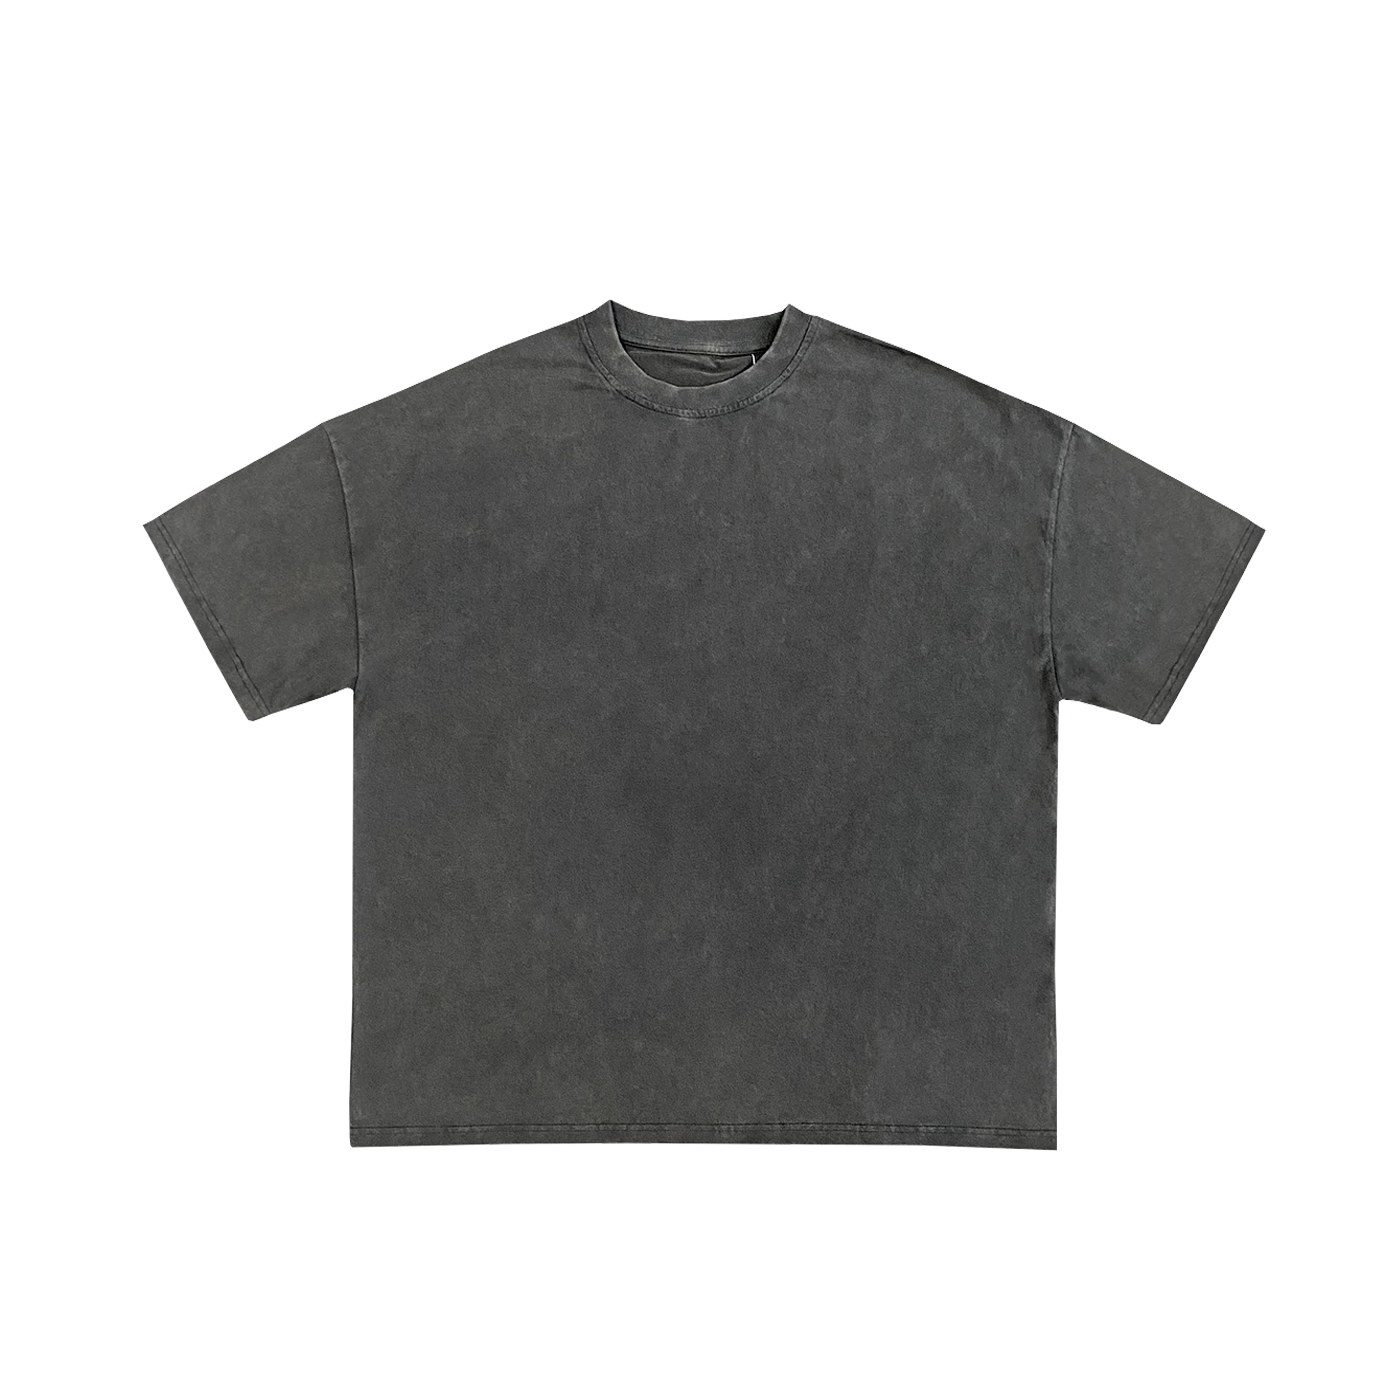 "T-shirt gris anthracite effet délavé à coupe droite en coton, parfait pour la personnalisation sur prynt.shop.